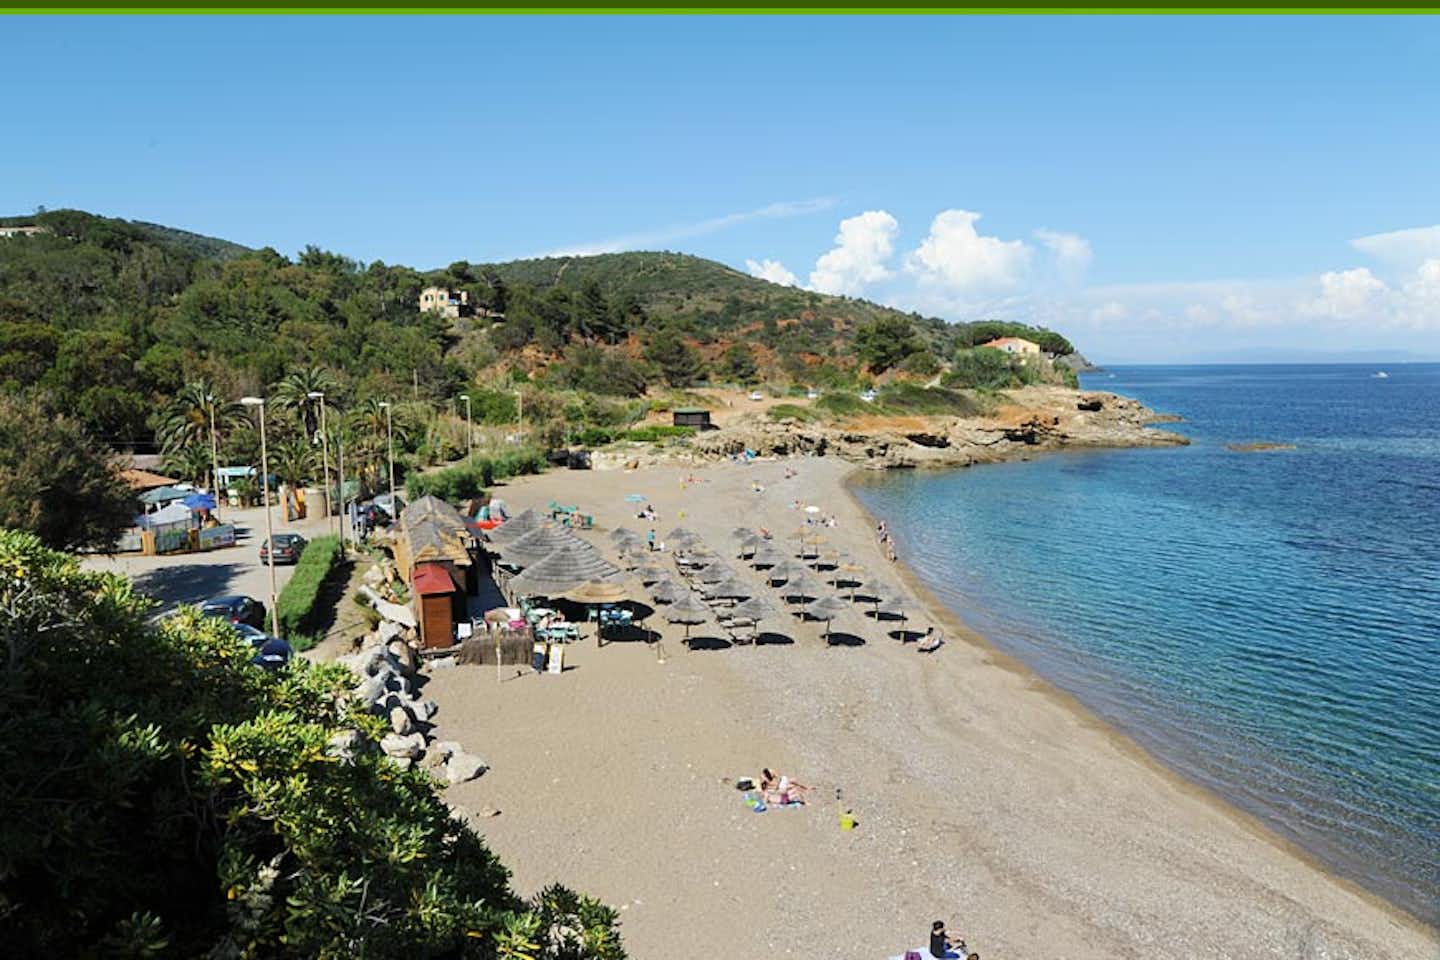 Camping Reale - Blick auf den Strand vor dem Campingplatz und das Mittelmeer